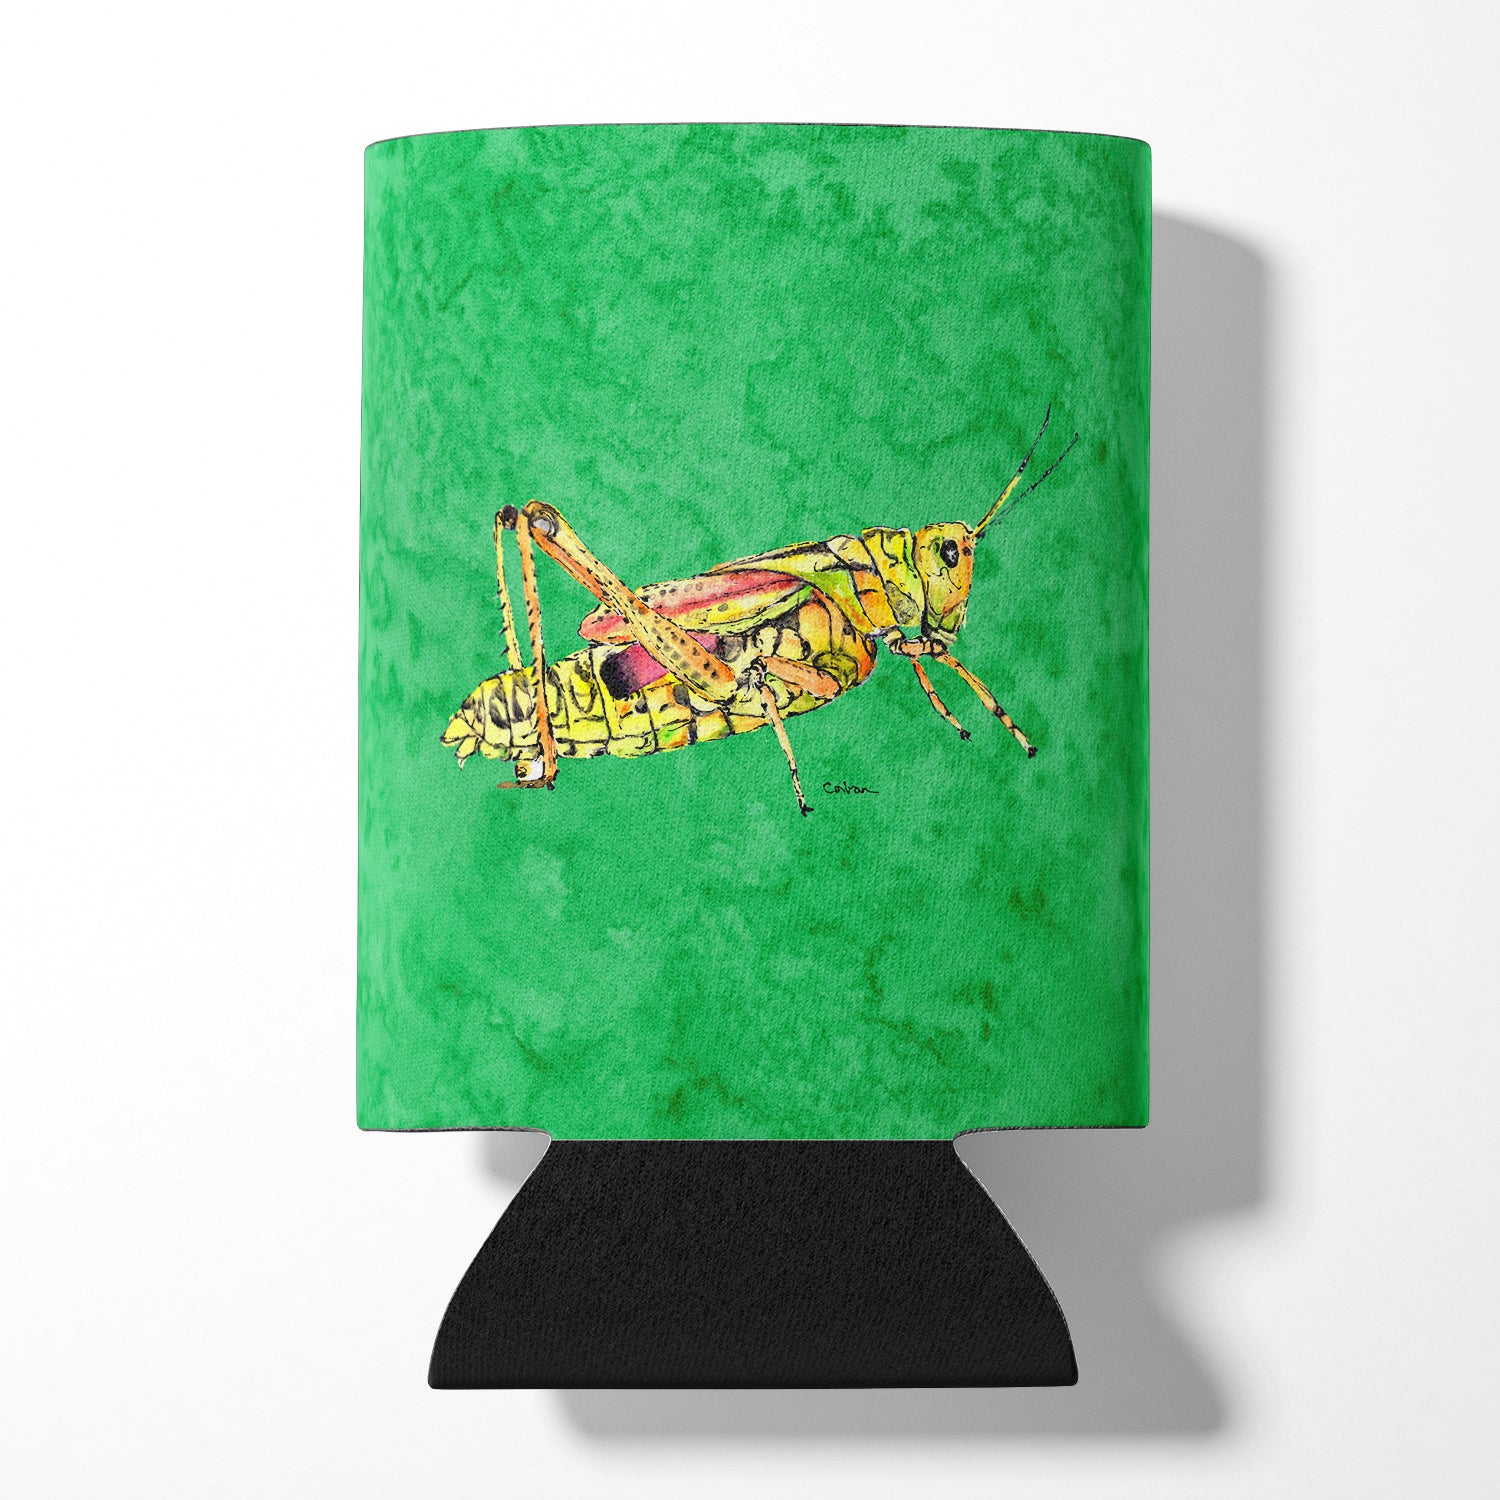 Grasshopper on Green Can or Bottle Beverage Insulator Hugger.